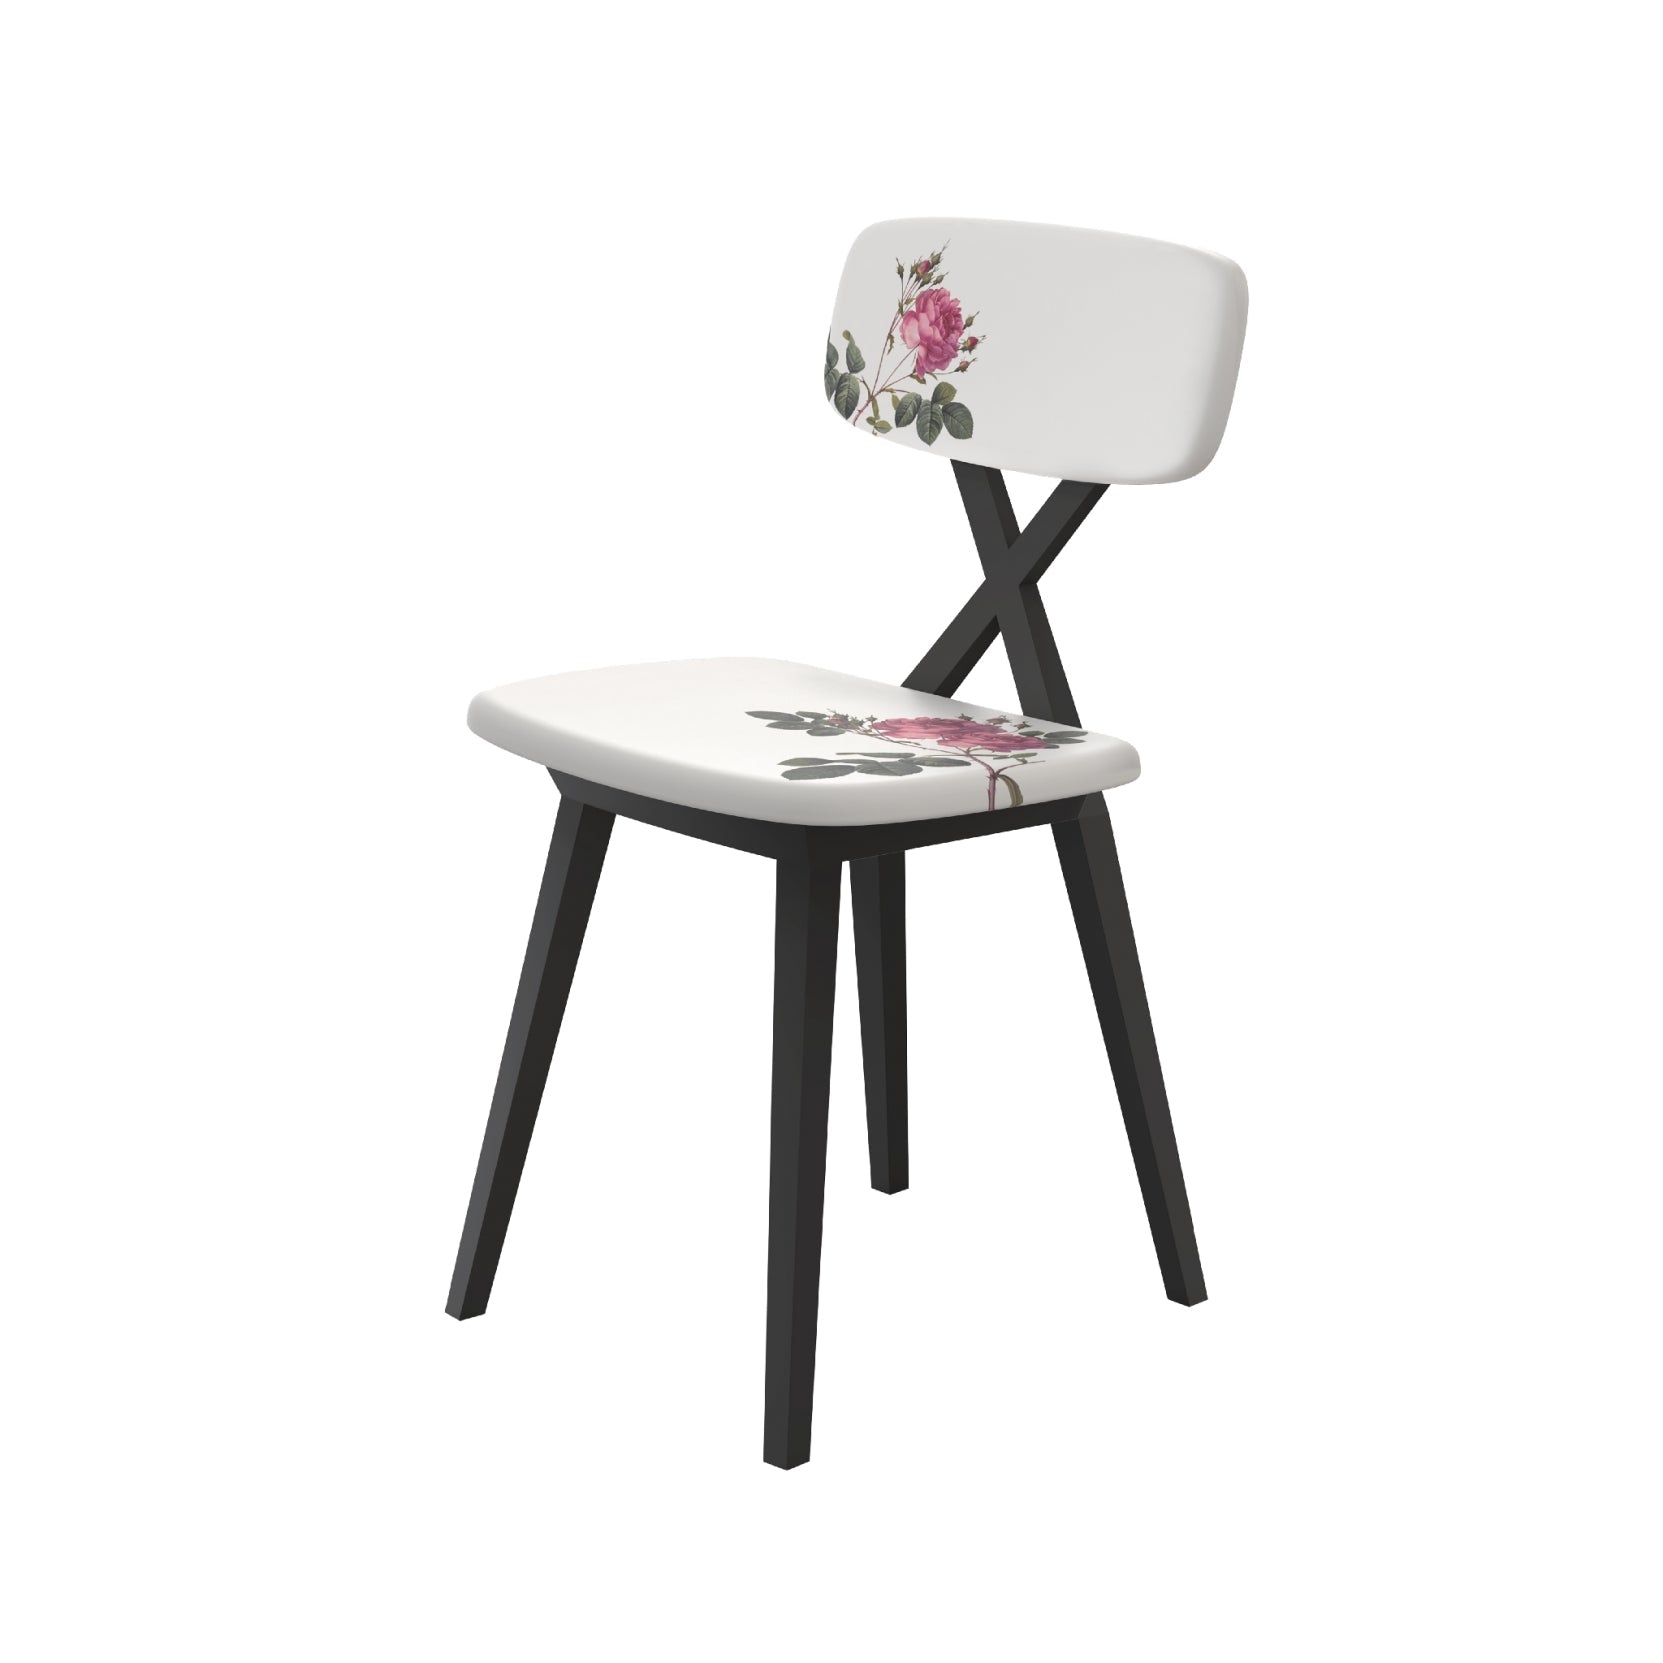 Qeeboo X Chair w Flower Cushion 2pcs